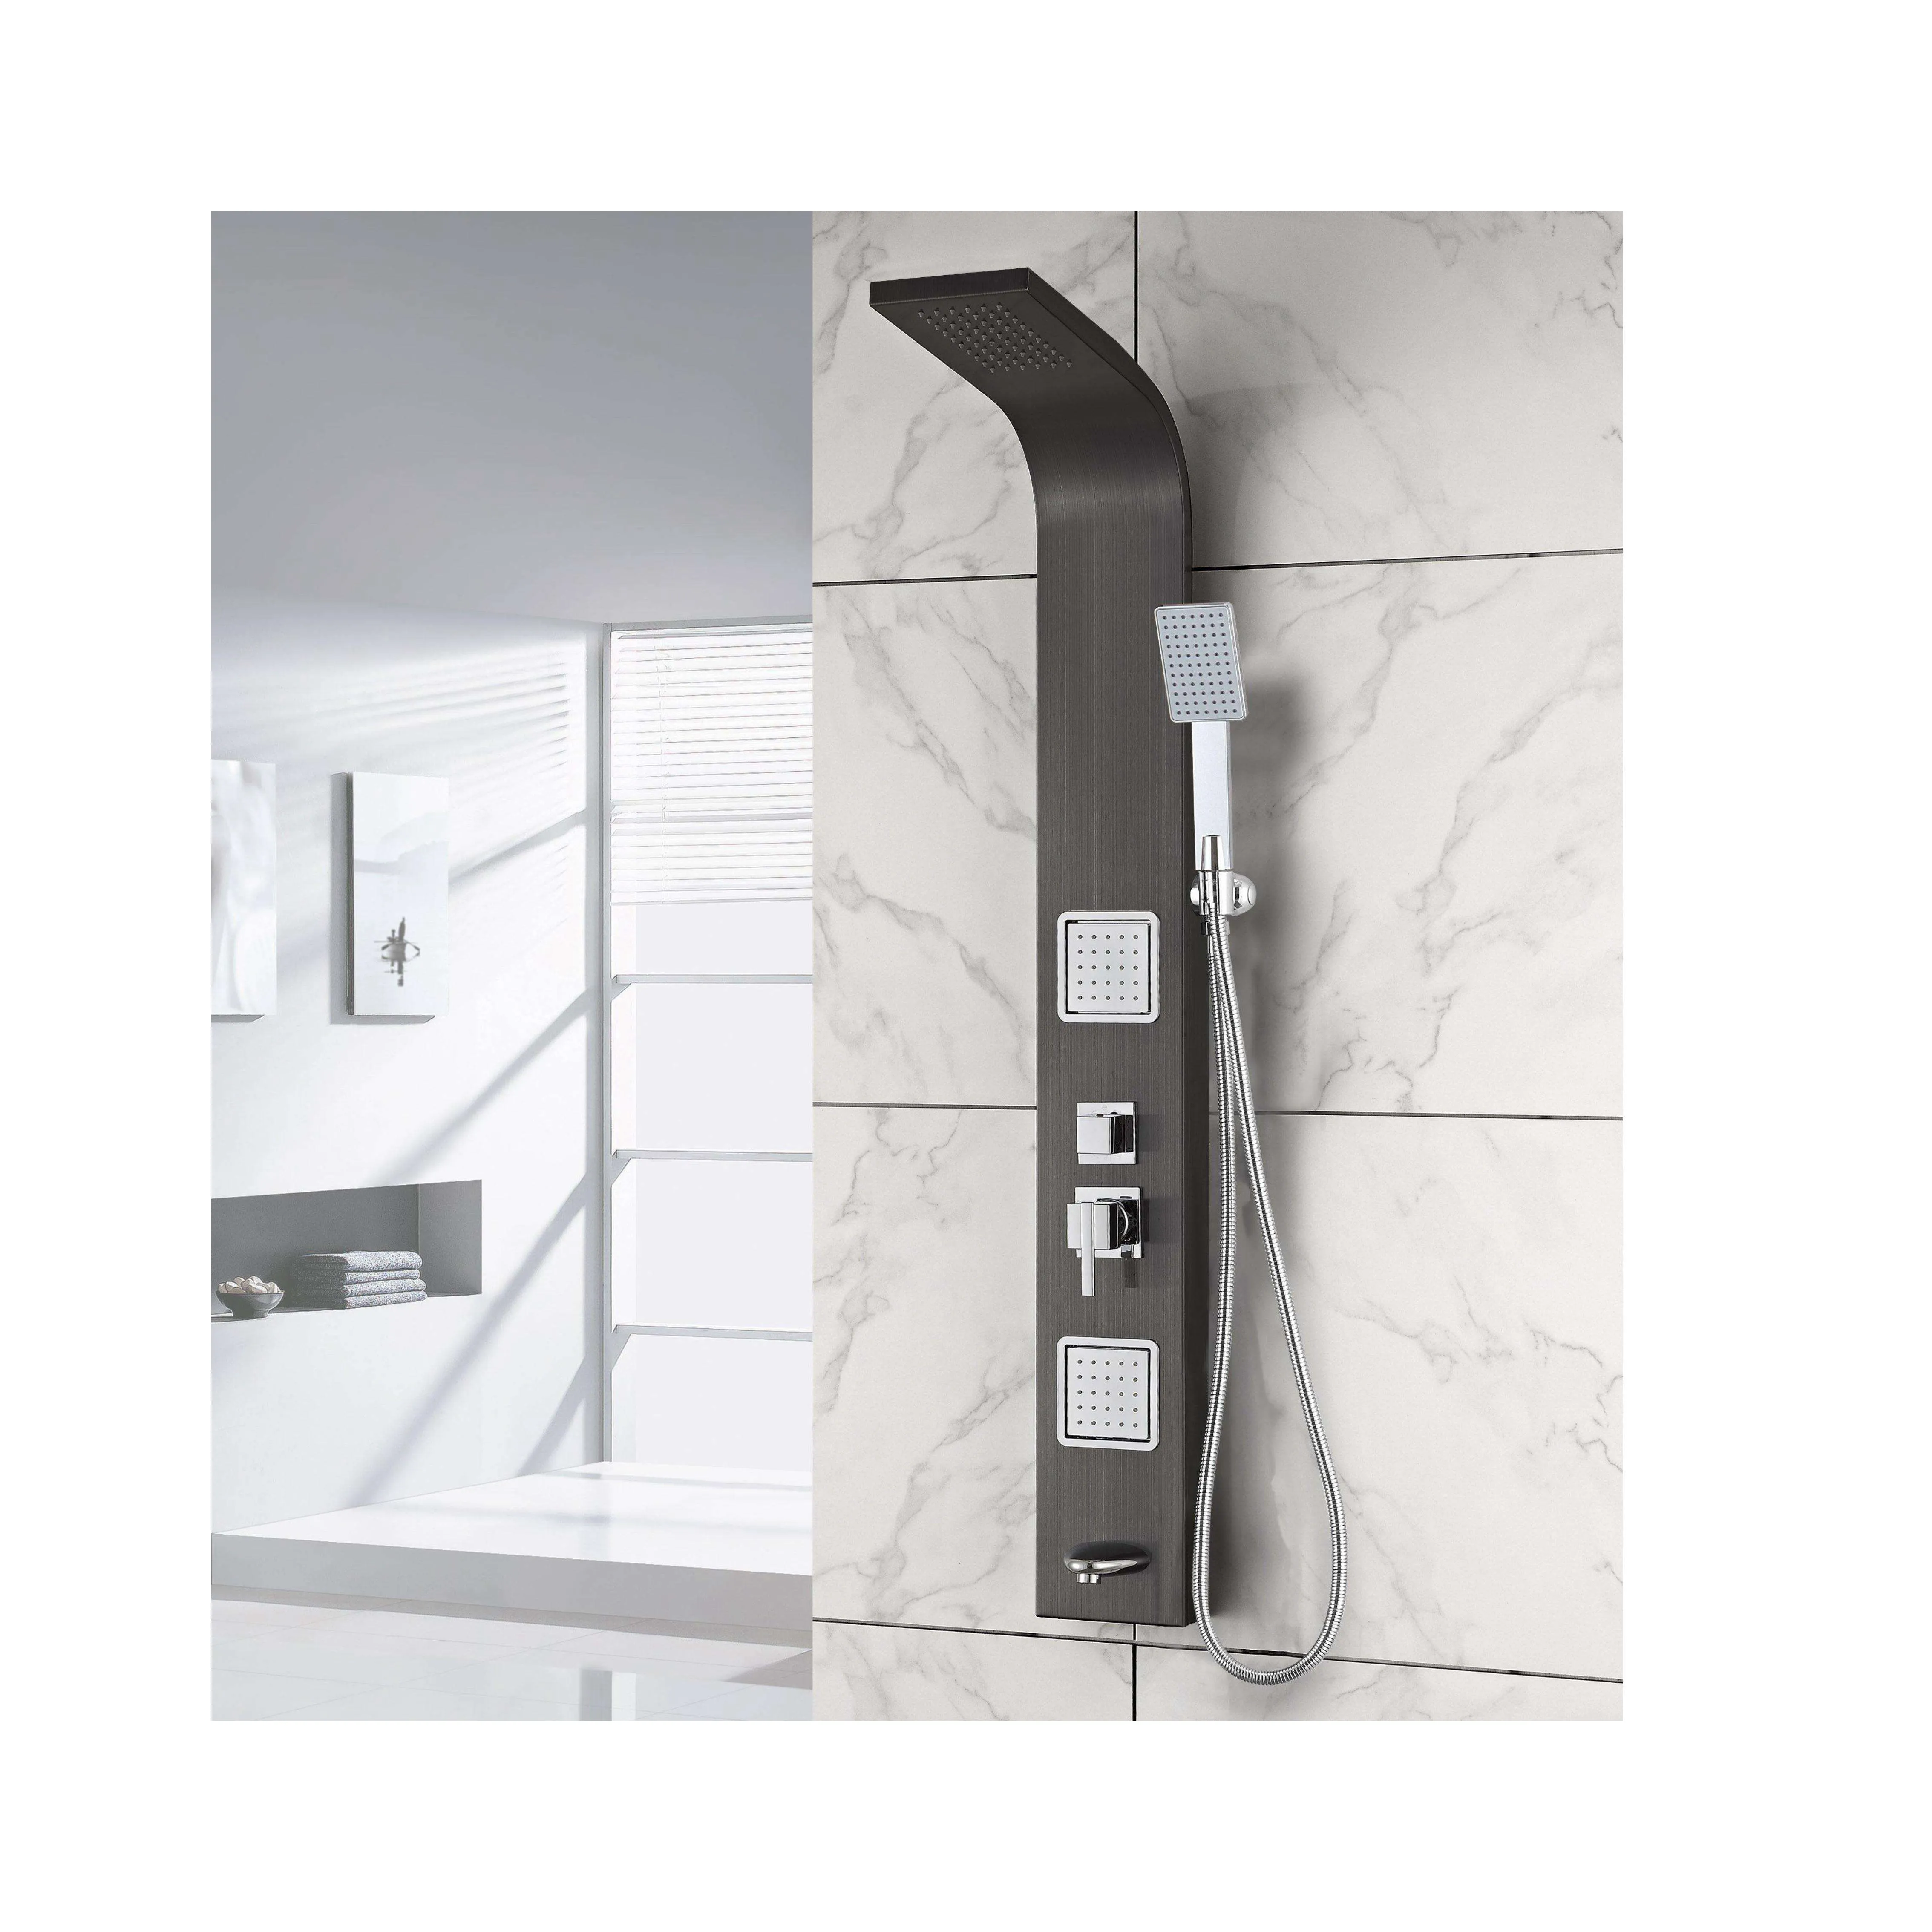 Hotaqi low-key chaste spazzolato nero titanio doccia pannello massaggiante parete con uscita acqua inferiore